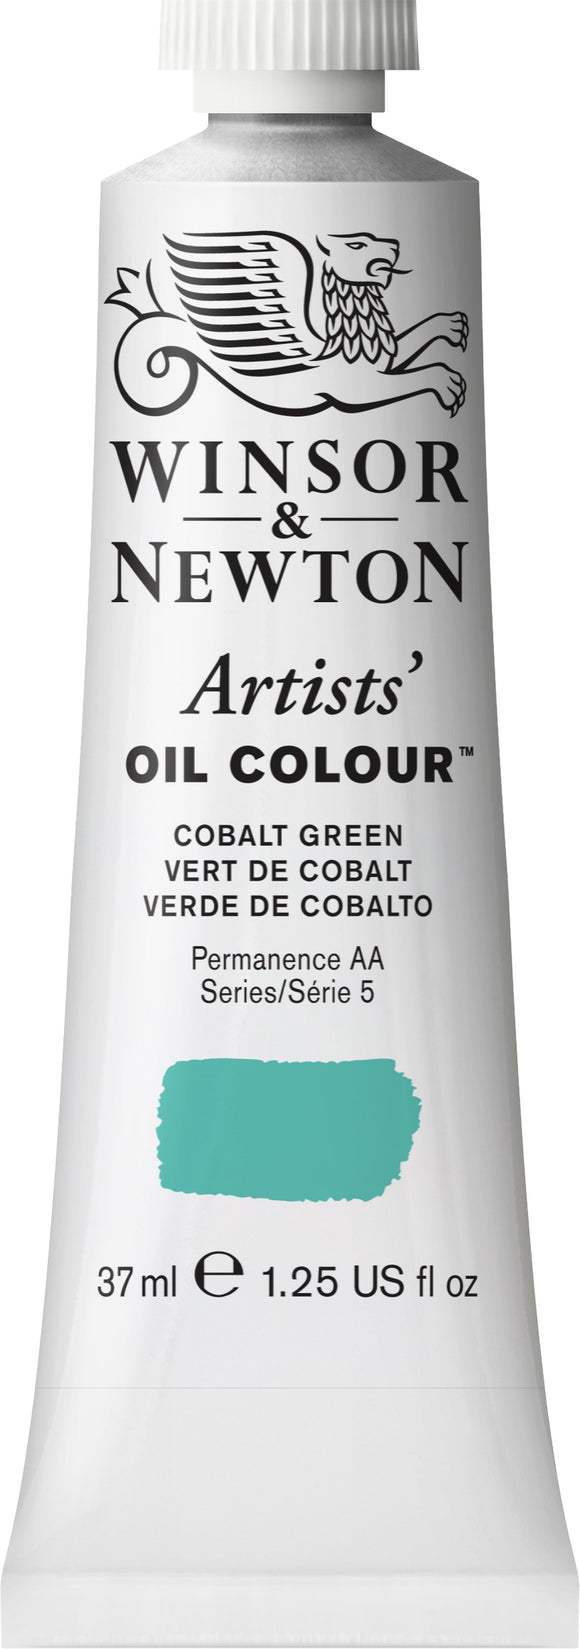 Winsor & Newton Artist Oil Colour Cobalt Green 37Ml